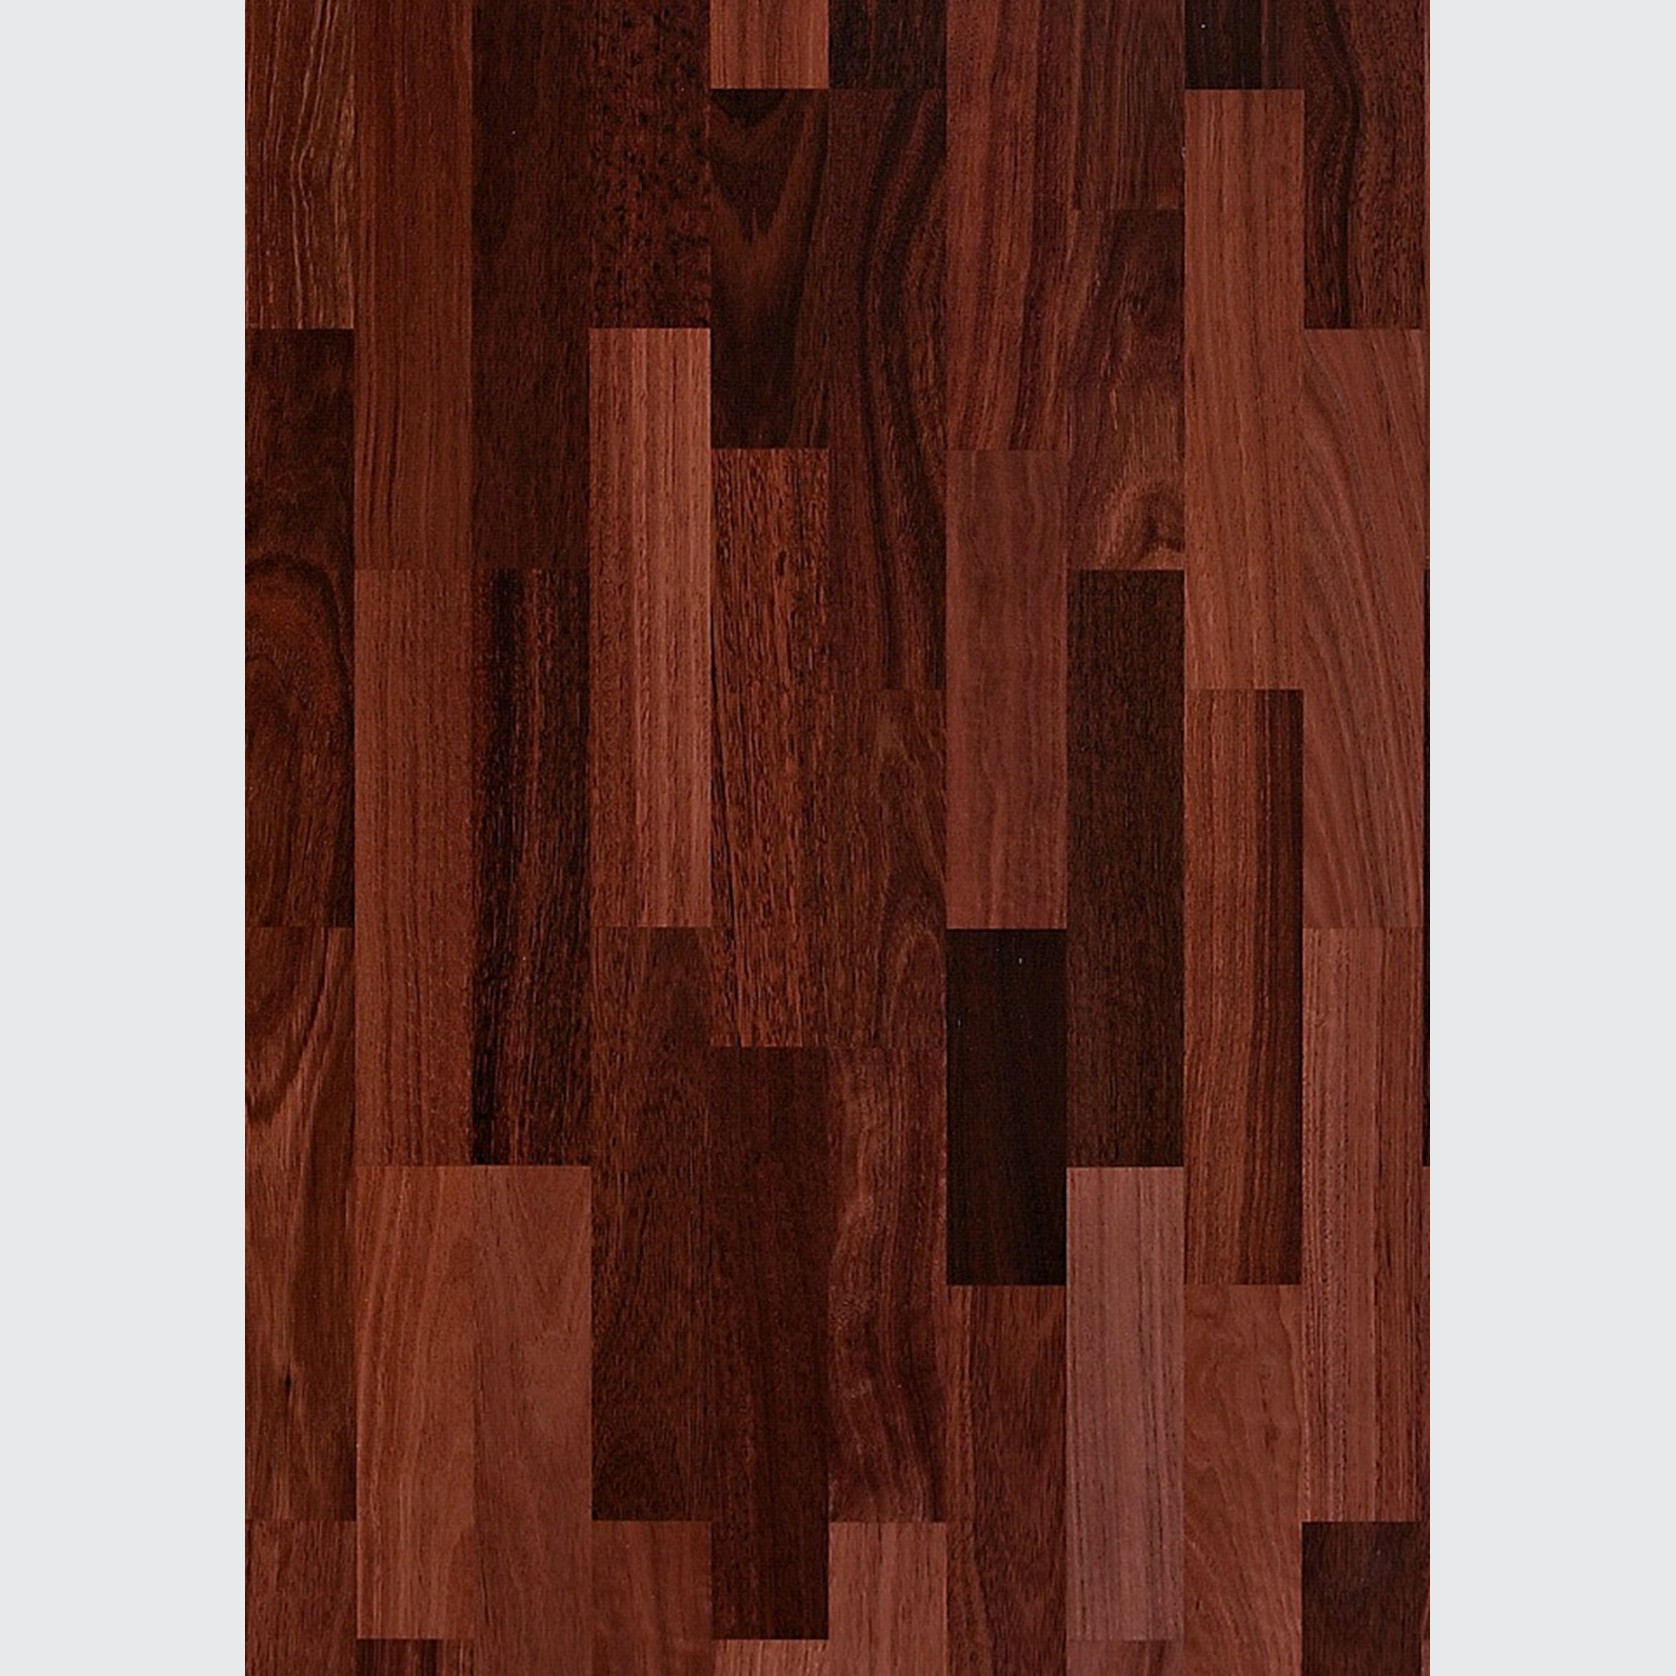 Jarrah Sydney Wood Flooring gallery detail image